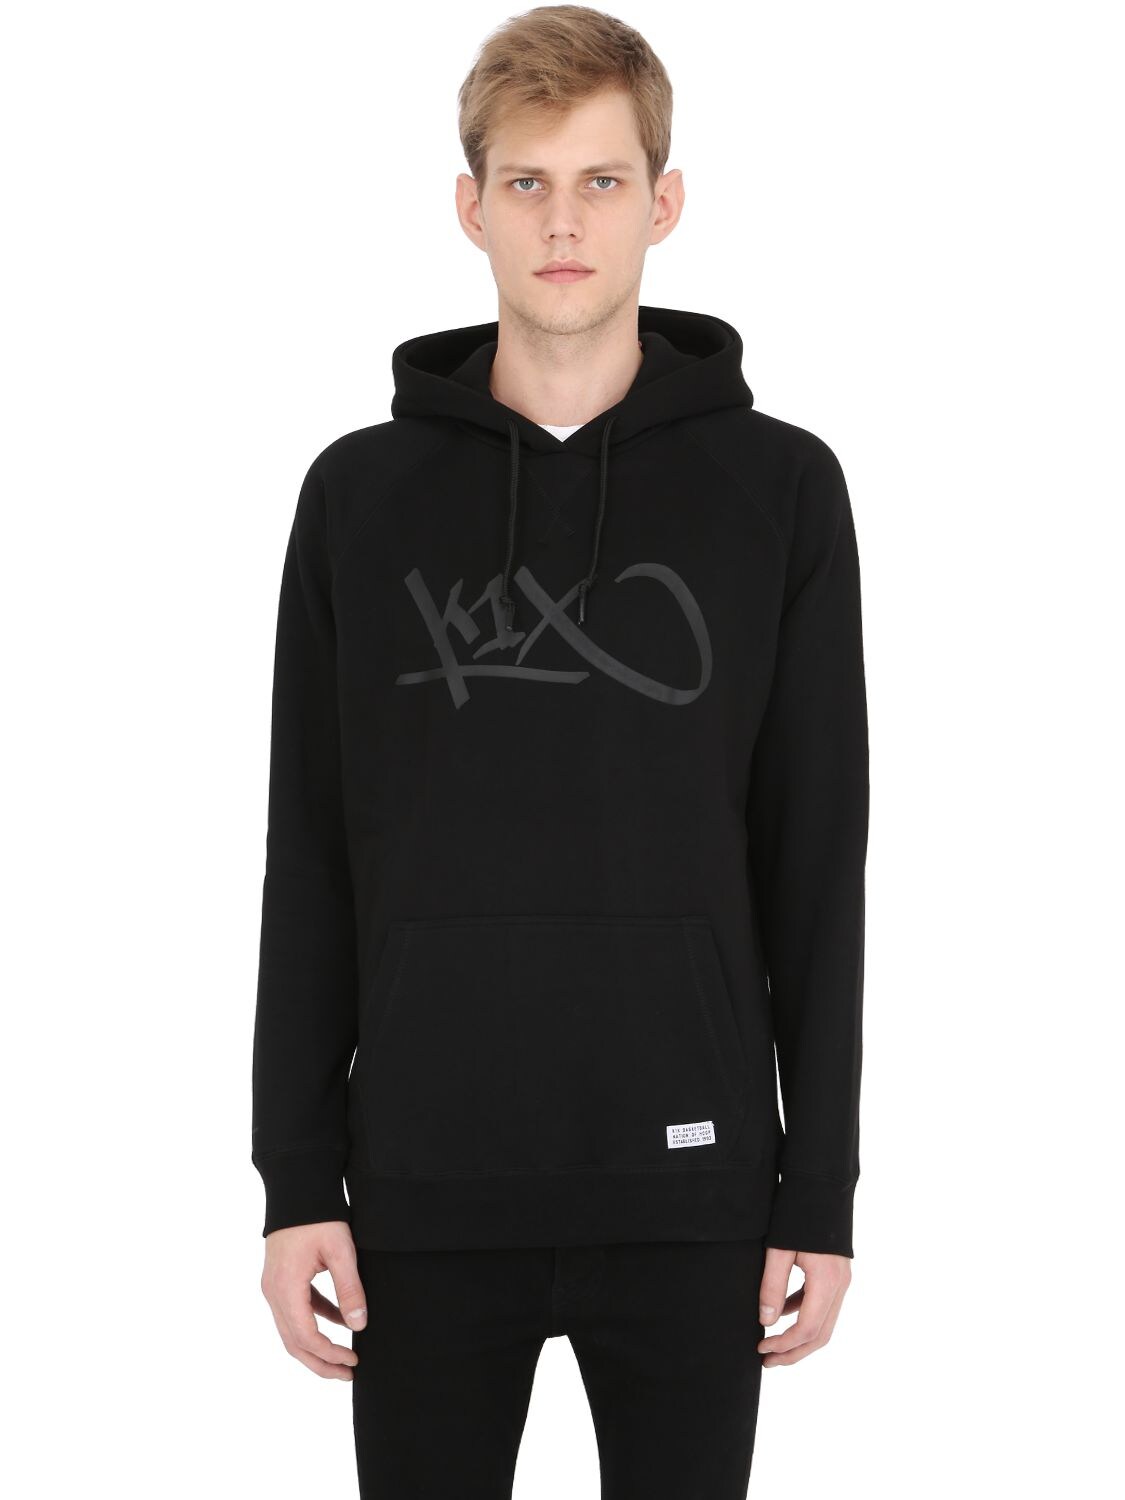 K1x Rubber Logo Hooded Sweatshirt In Black